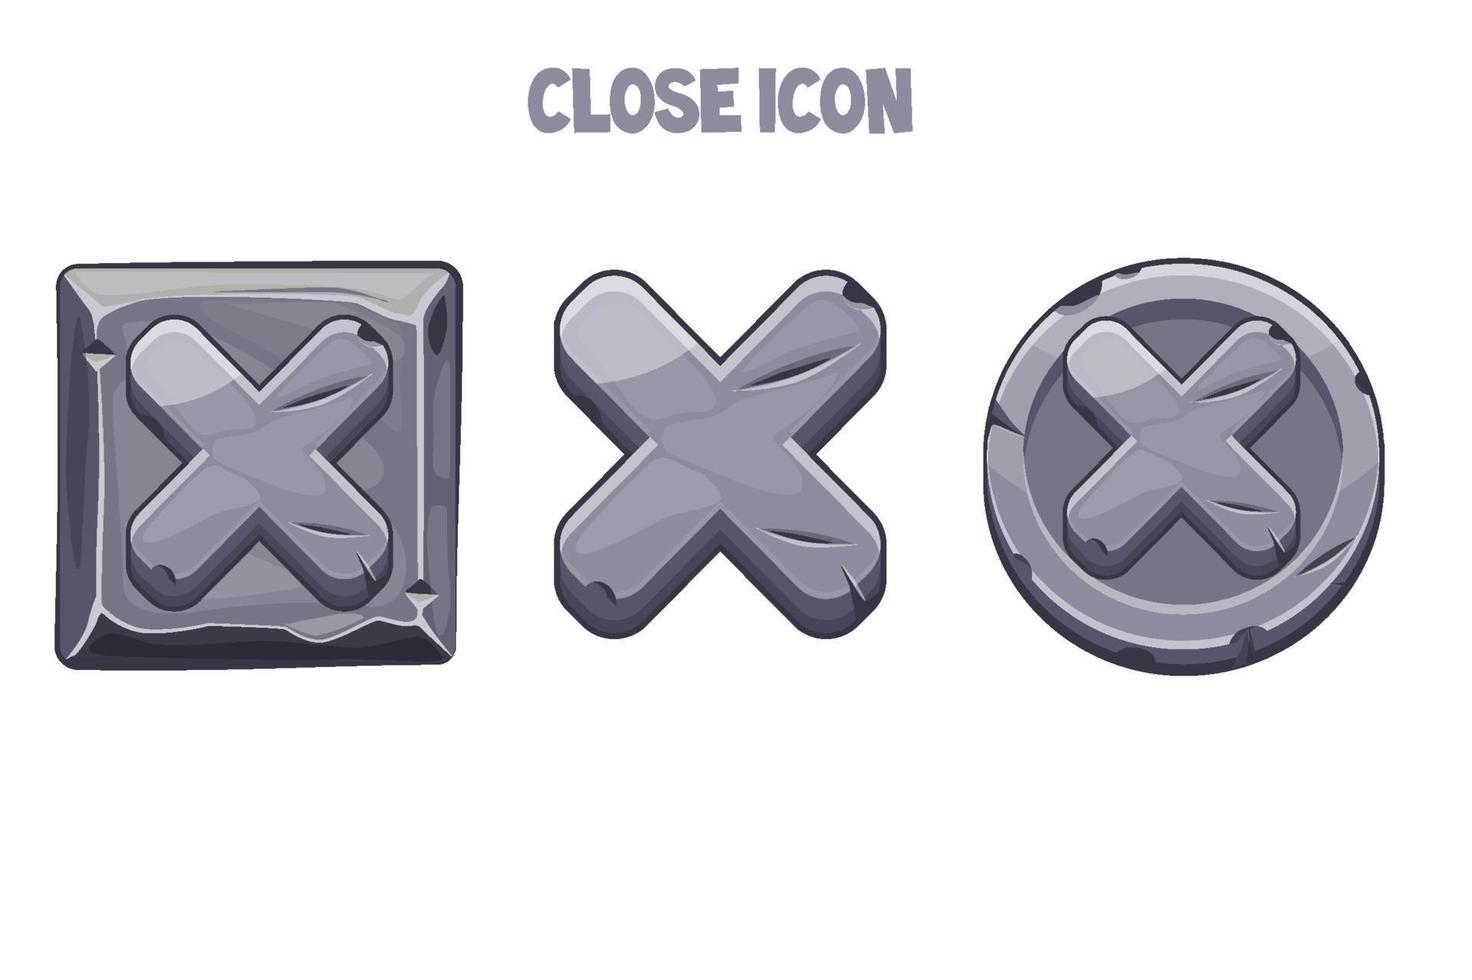 los botones o iconos de piedra gris se cierran para el menú. conjunto de iconos con cruces para un juego o interfaz. vector